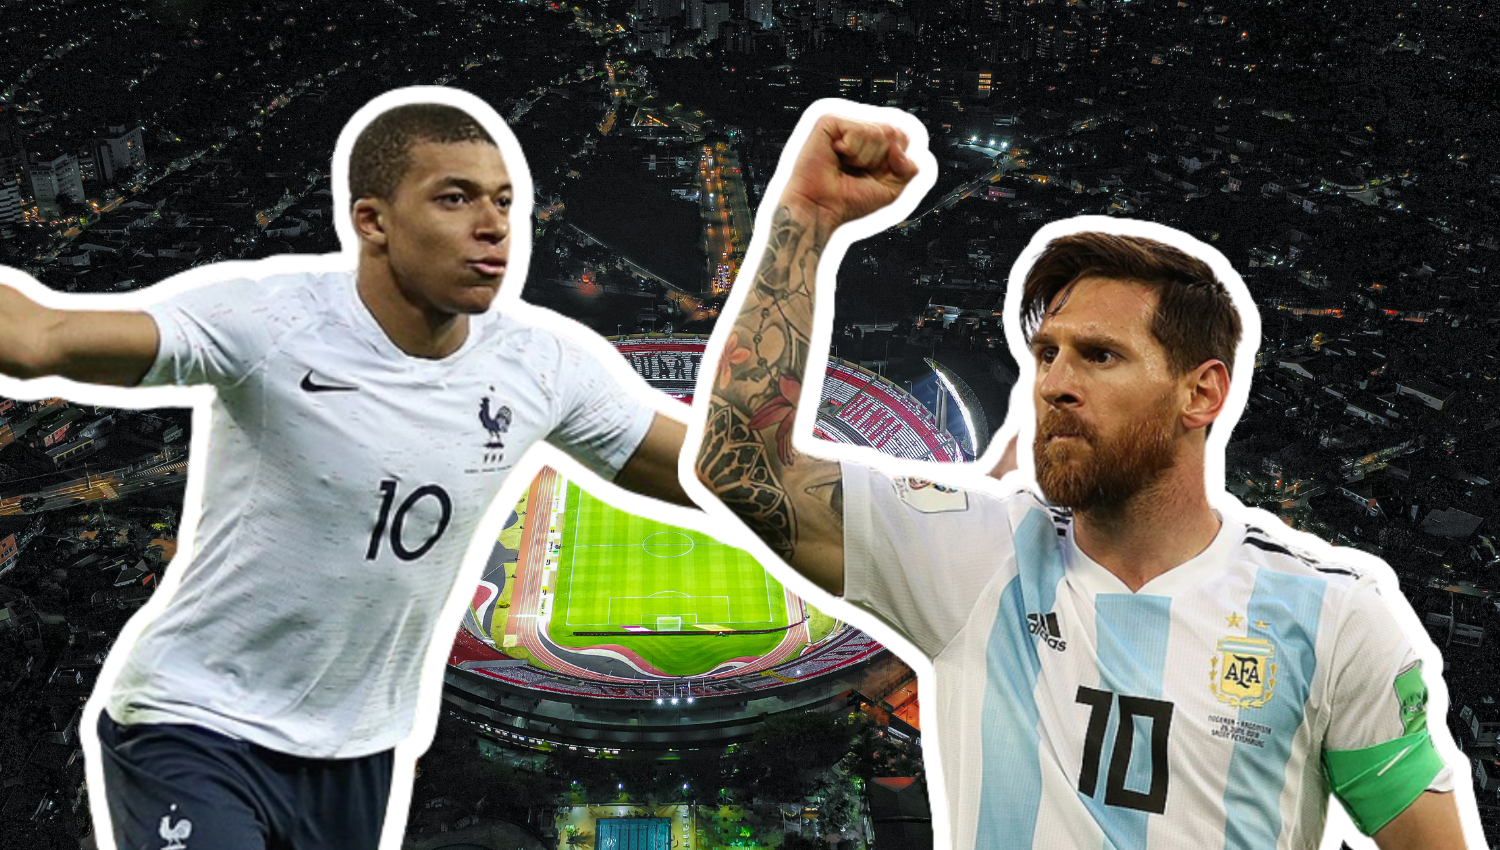 Messi vs Mbappe: A katari shejk álomfináléja, avagy a PSG projekt dicsősége